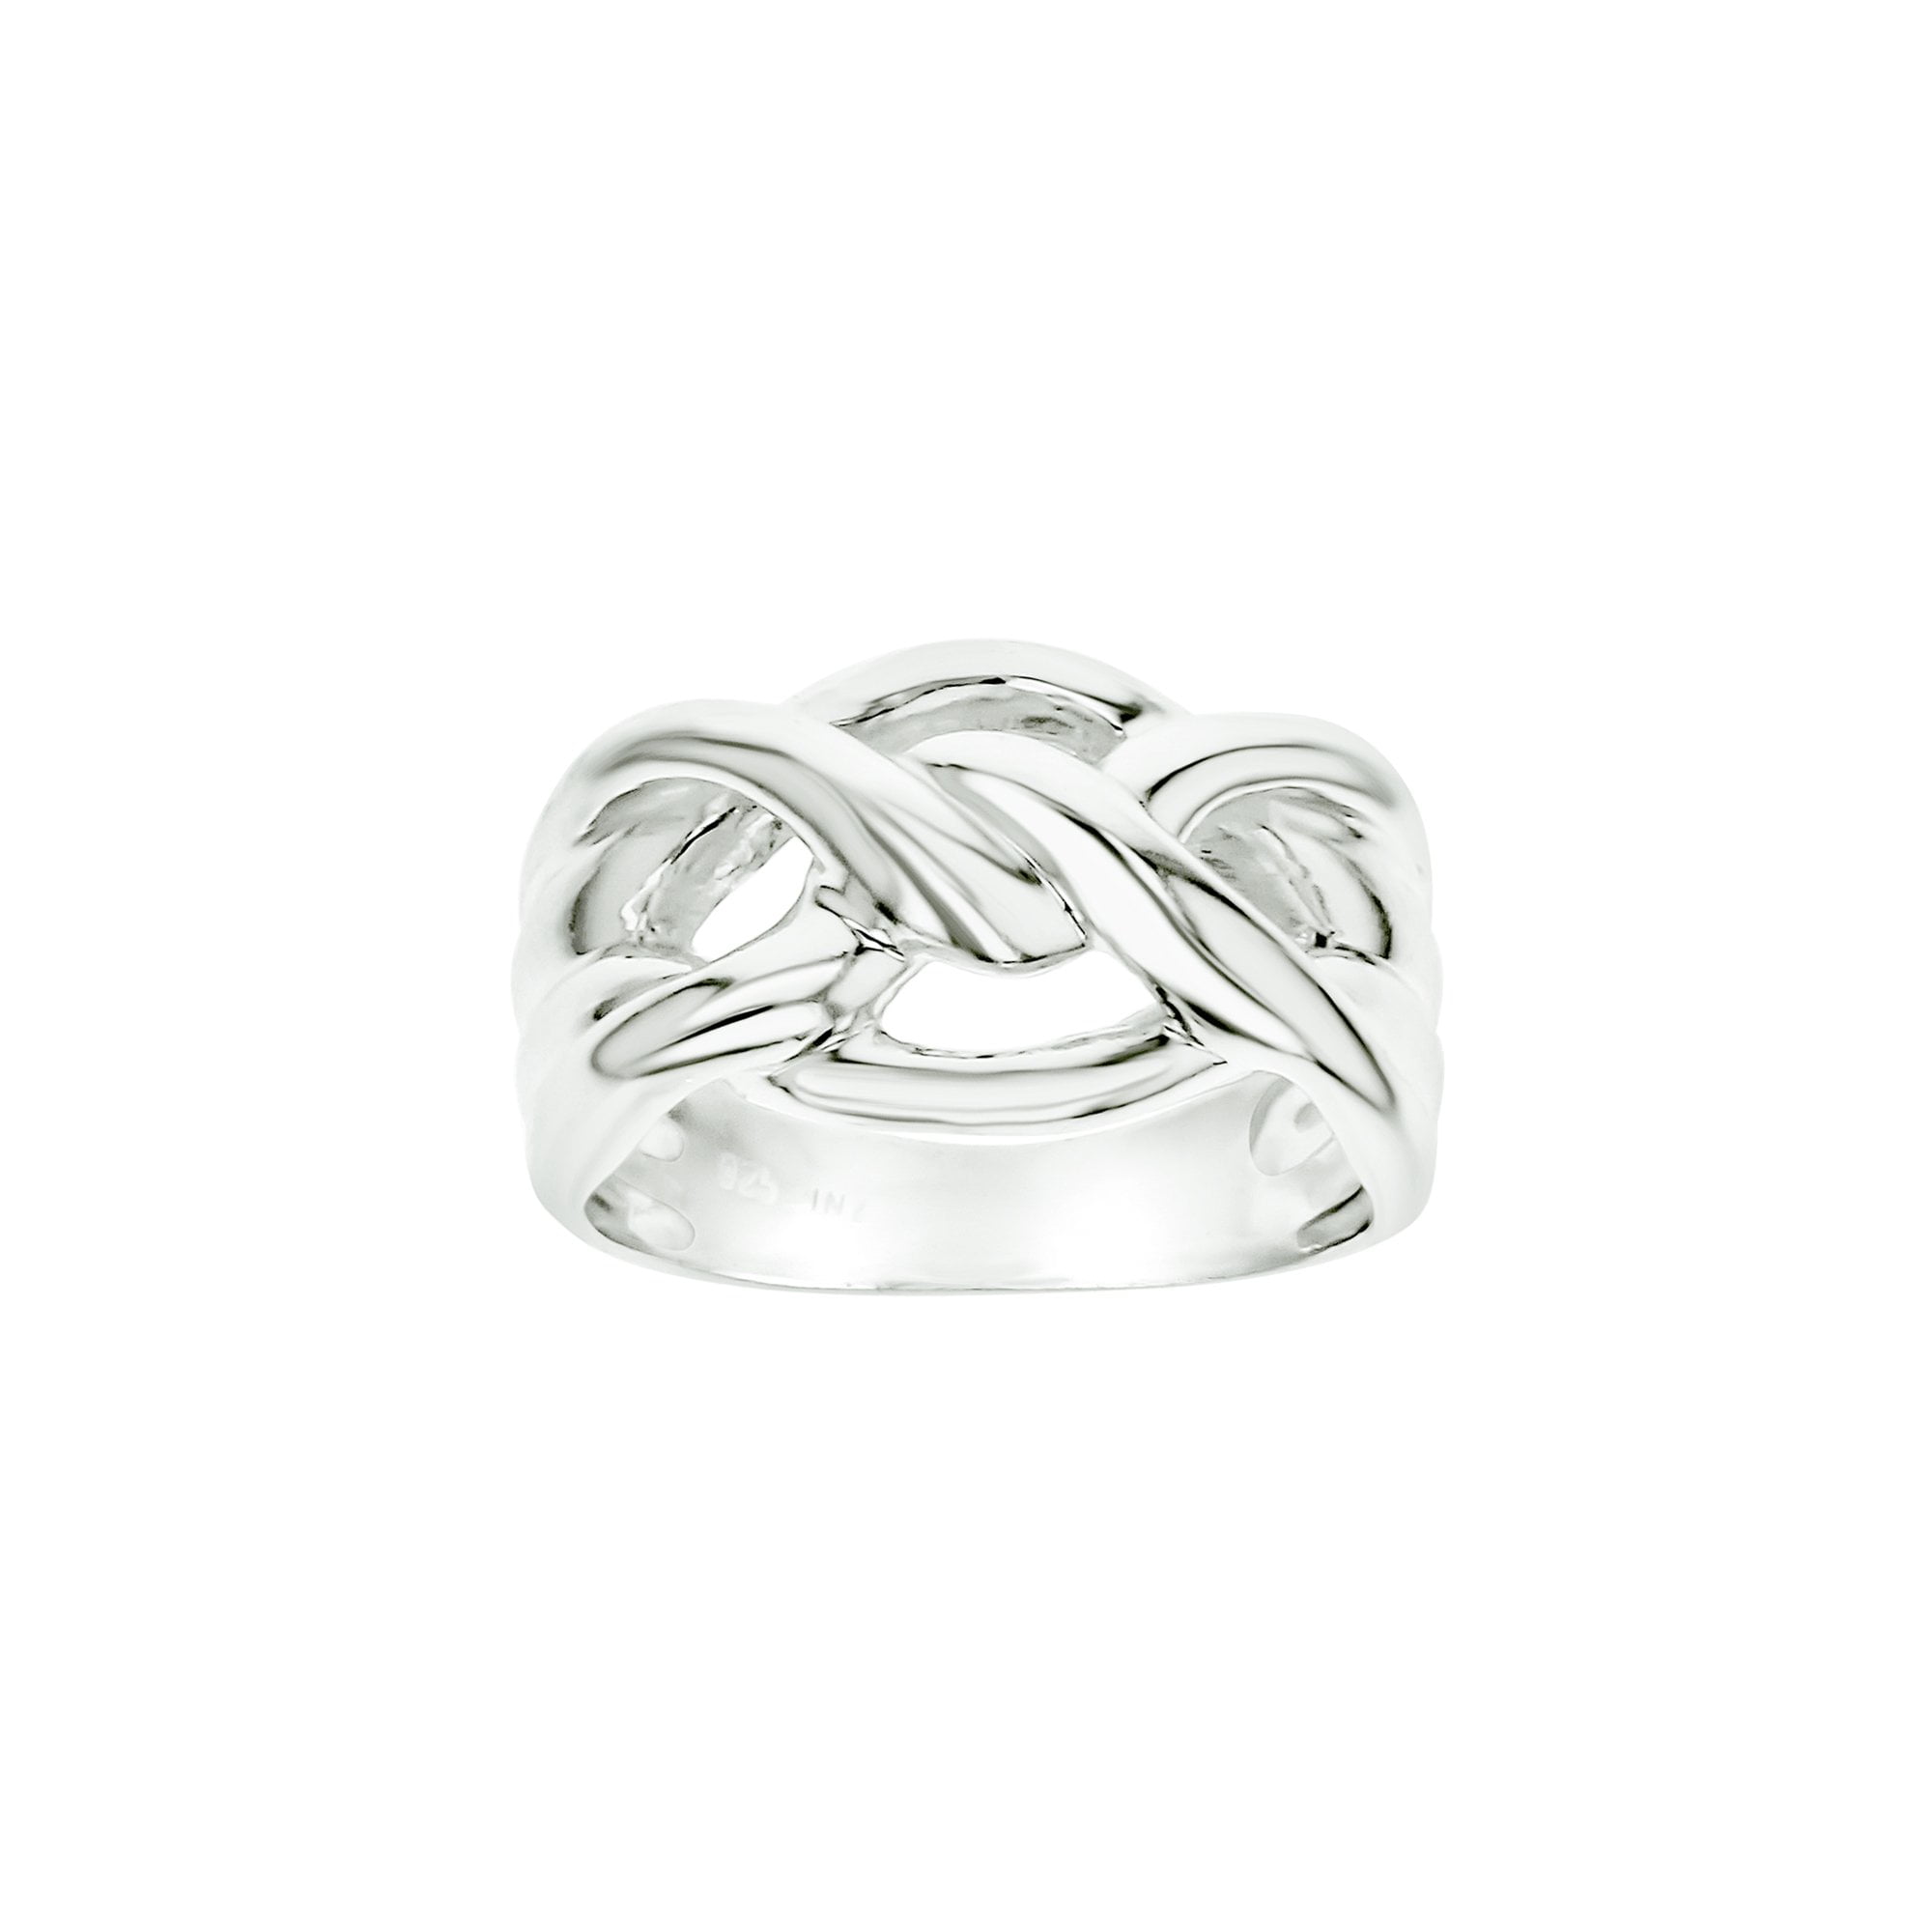 Solid Silver Knot Ring Handmade 925 Hallmark 